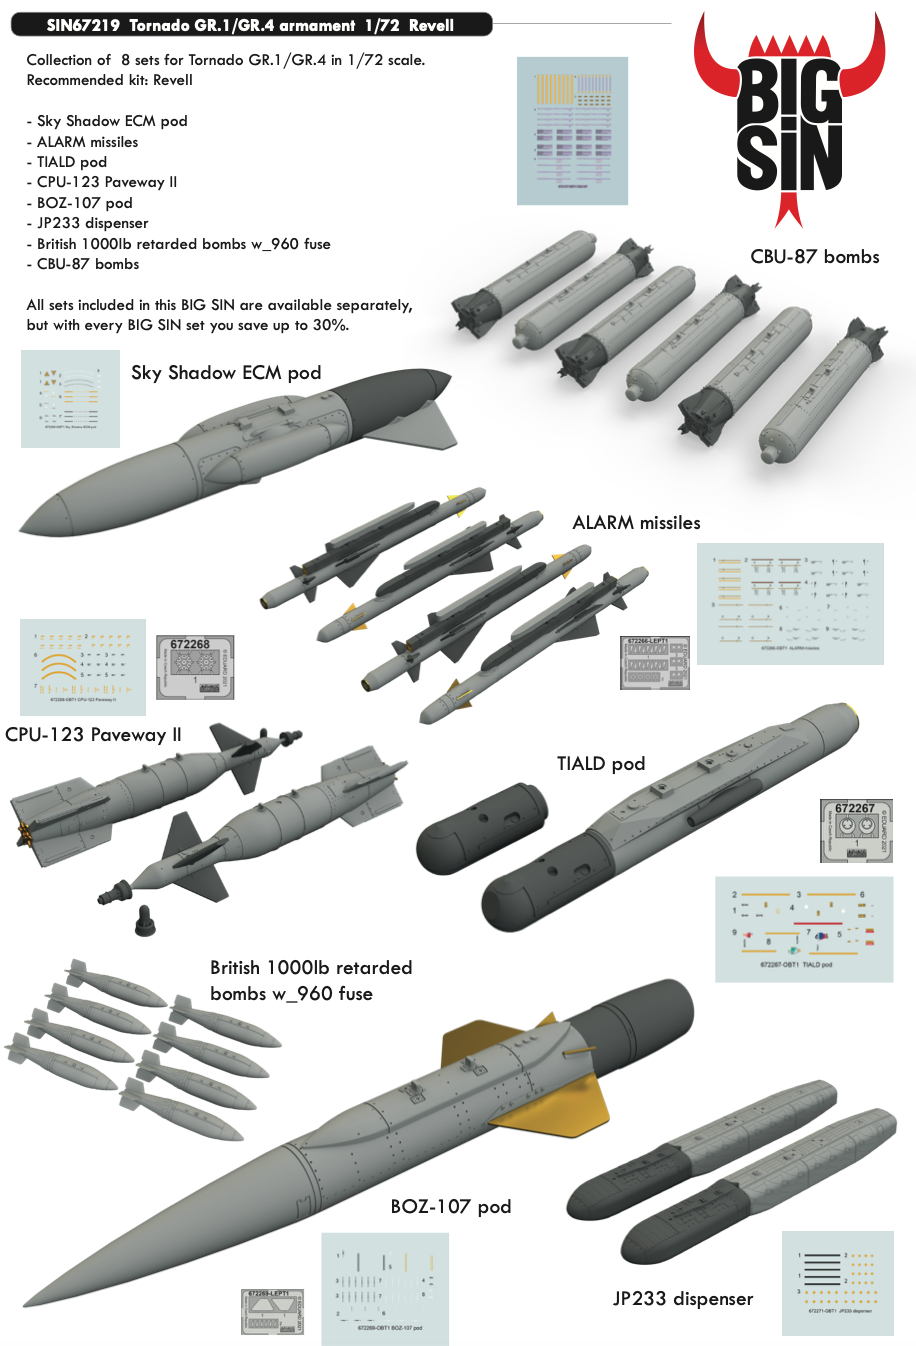 Дополнения из смолы 1/72 Panavia Tornado GR.1/GR.4 набор вооружения(Big-Sin set) (для модели Revell)